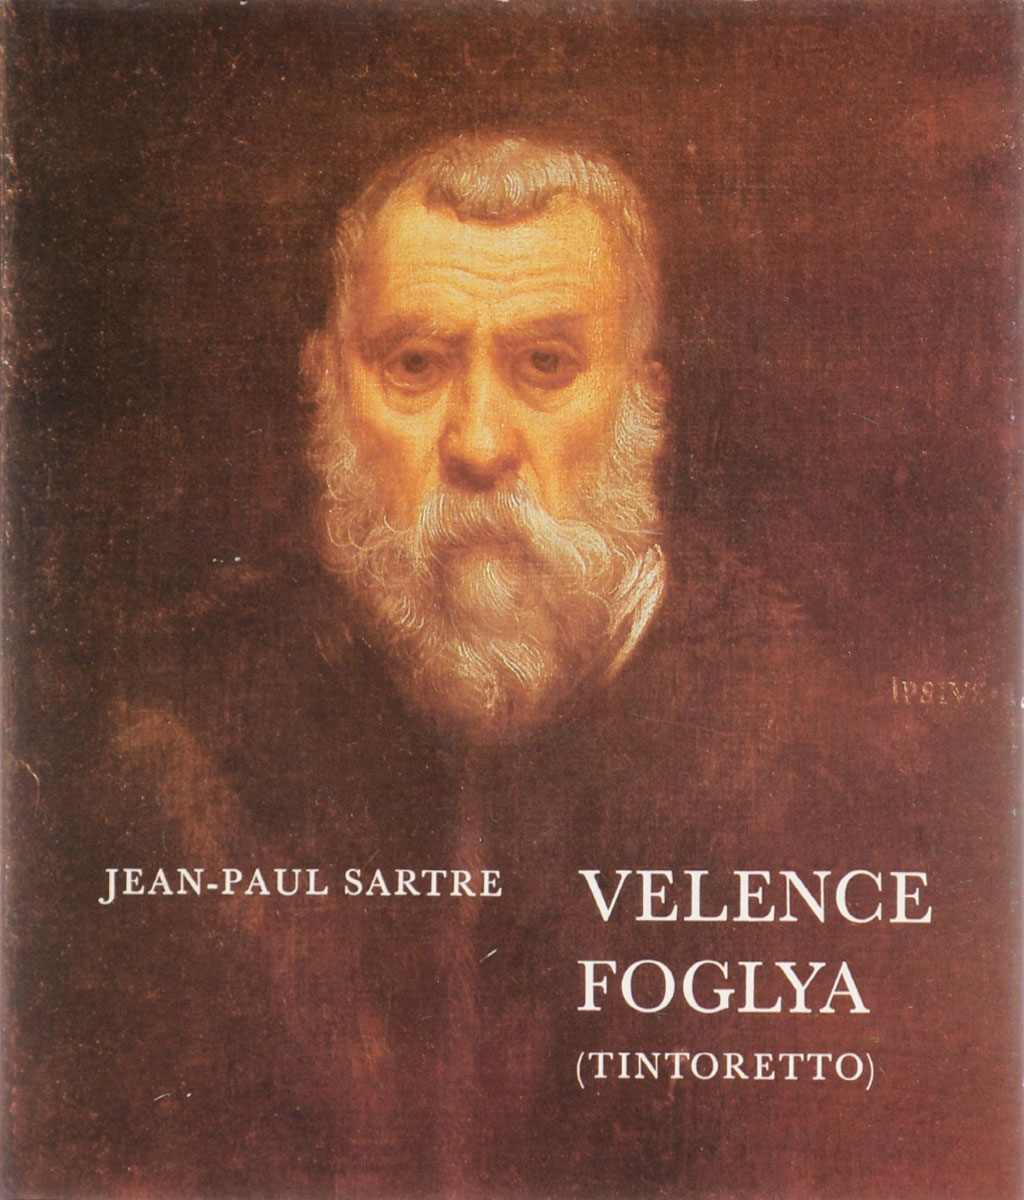 Velence Foglya (Tintoretto)